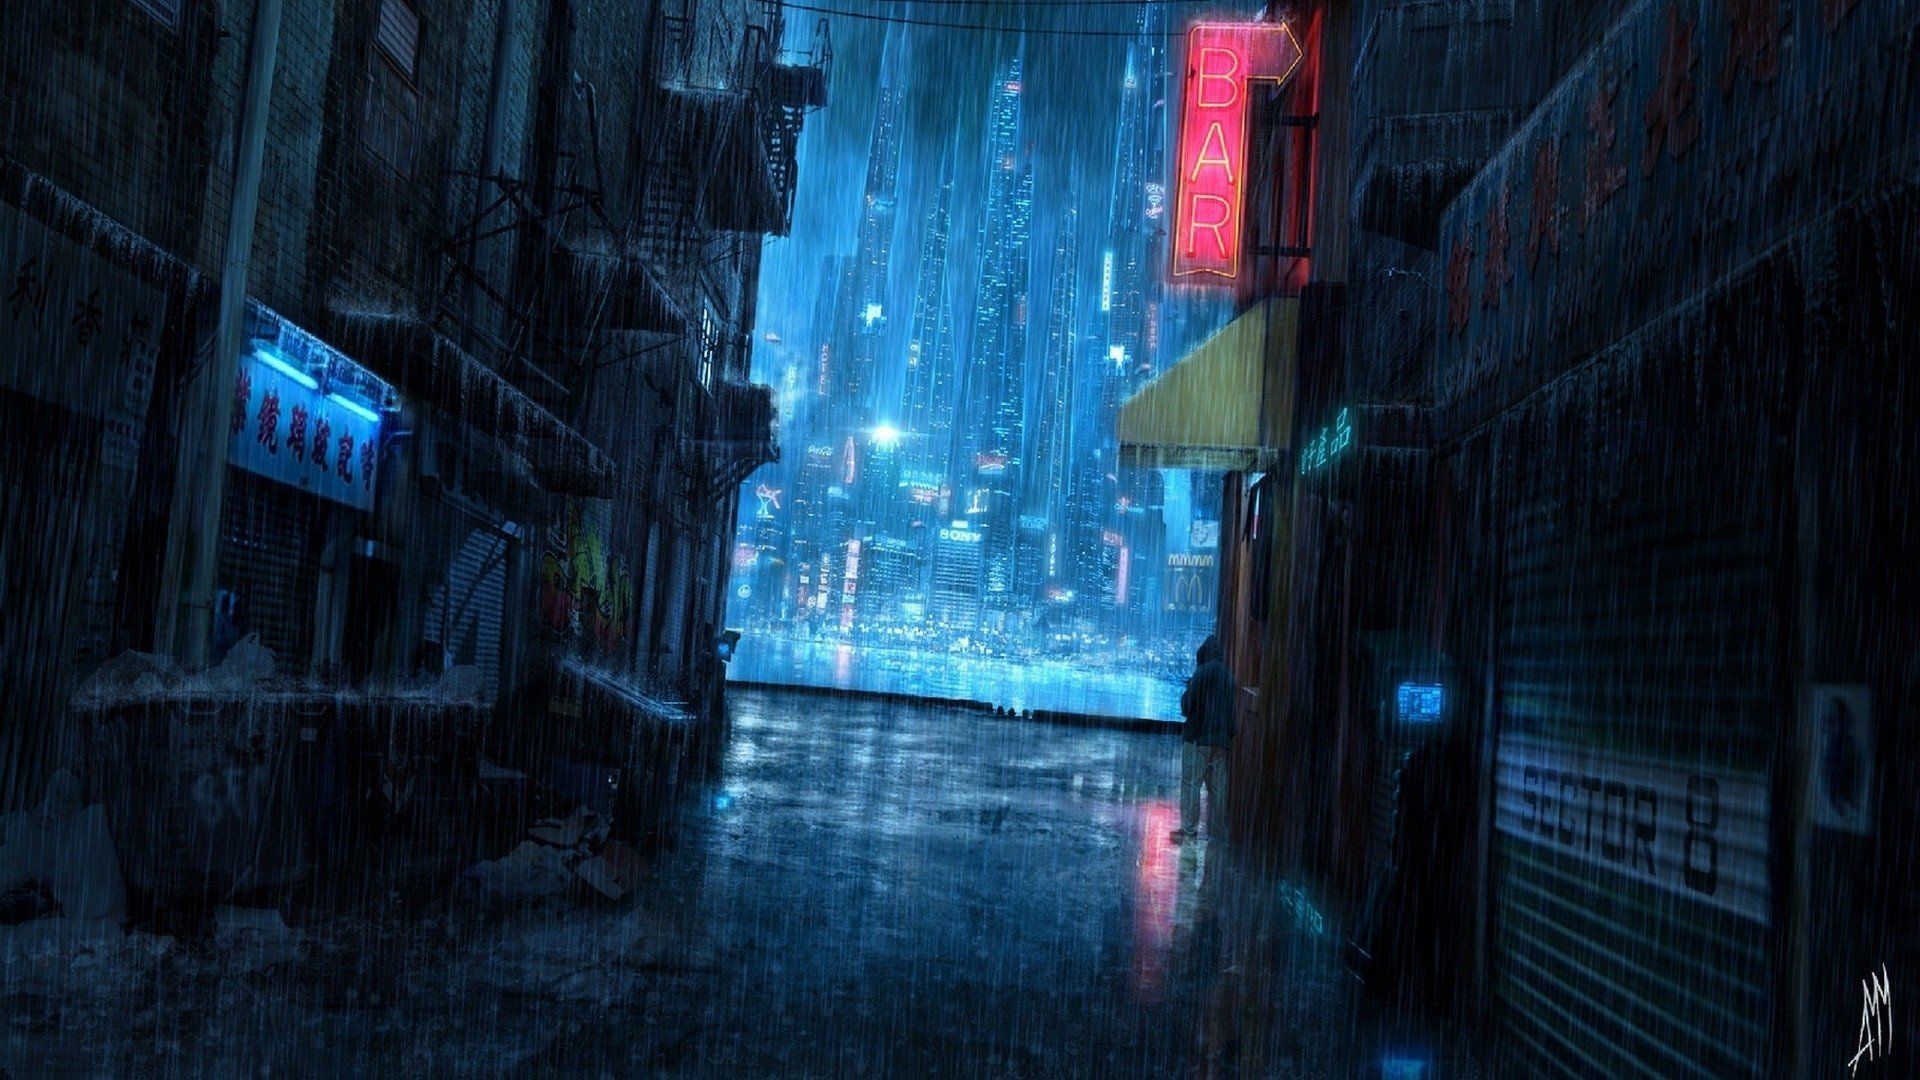 Fanyasy beauty rain street night cityscape city wallpaperx1080